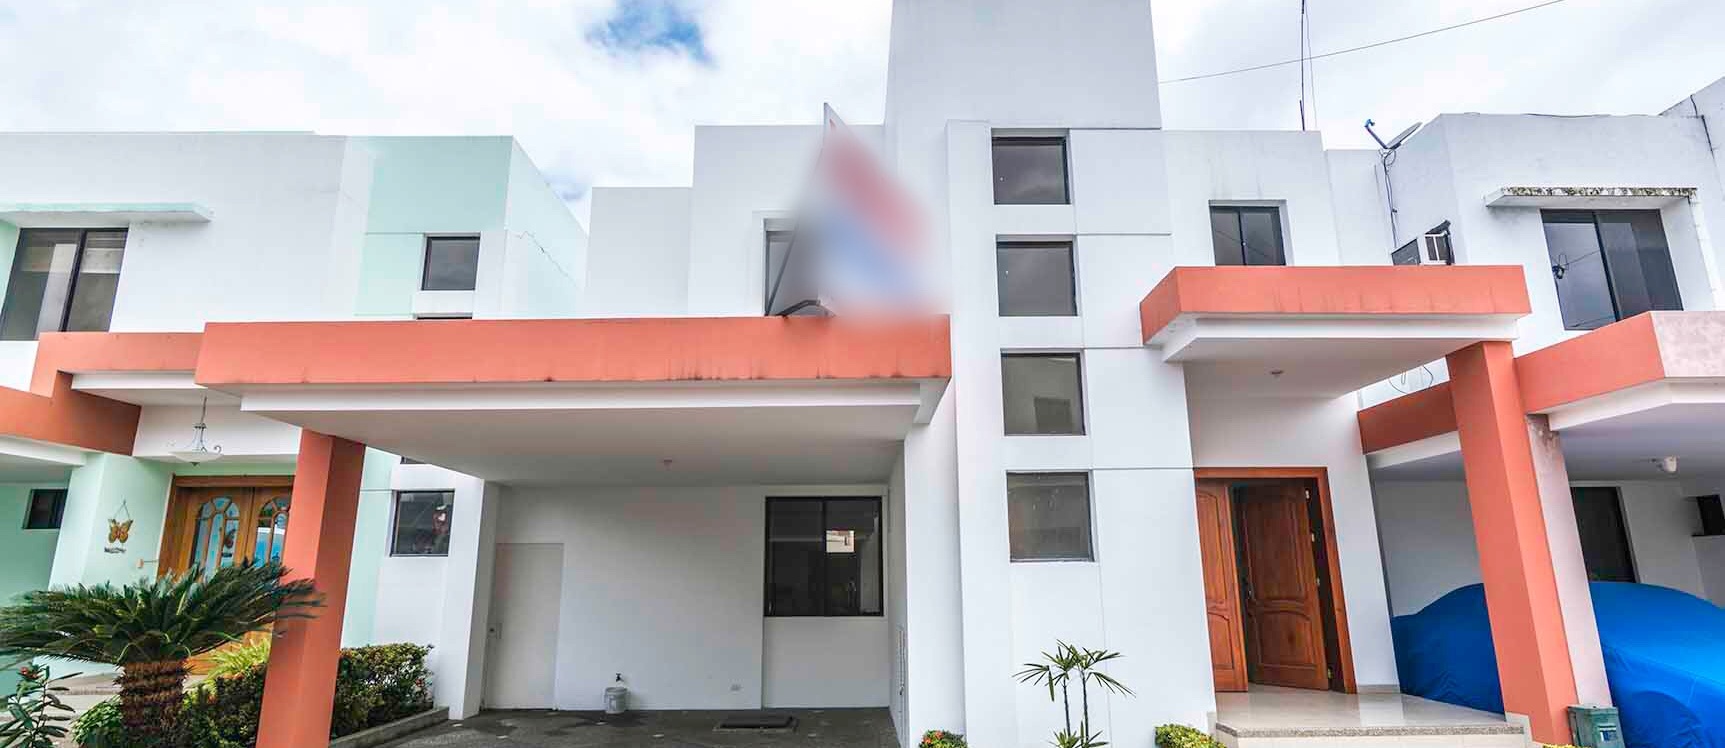 GeoBienes - Casa en venta Puerto Azul , Vía a la Costa  - Plusvalia Guayaquil Casas de venta y alquiler Inmobiliaria Ecuador